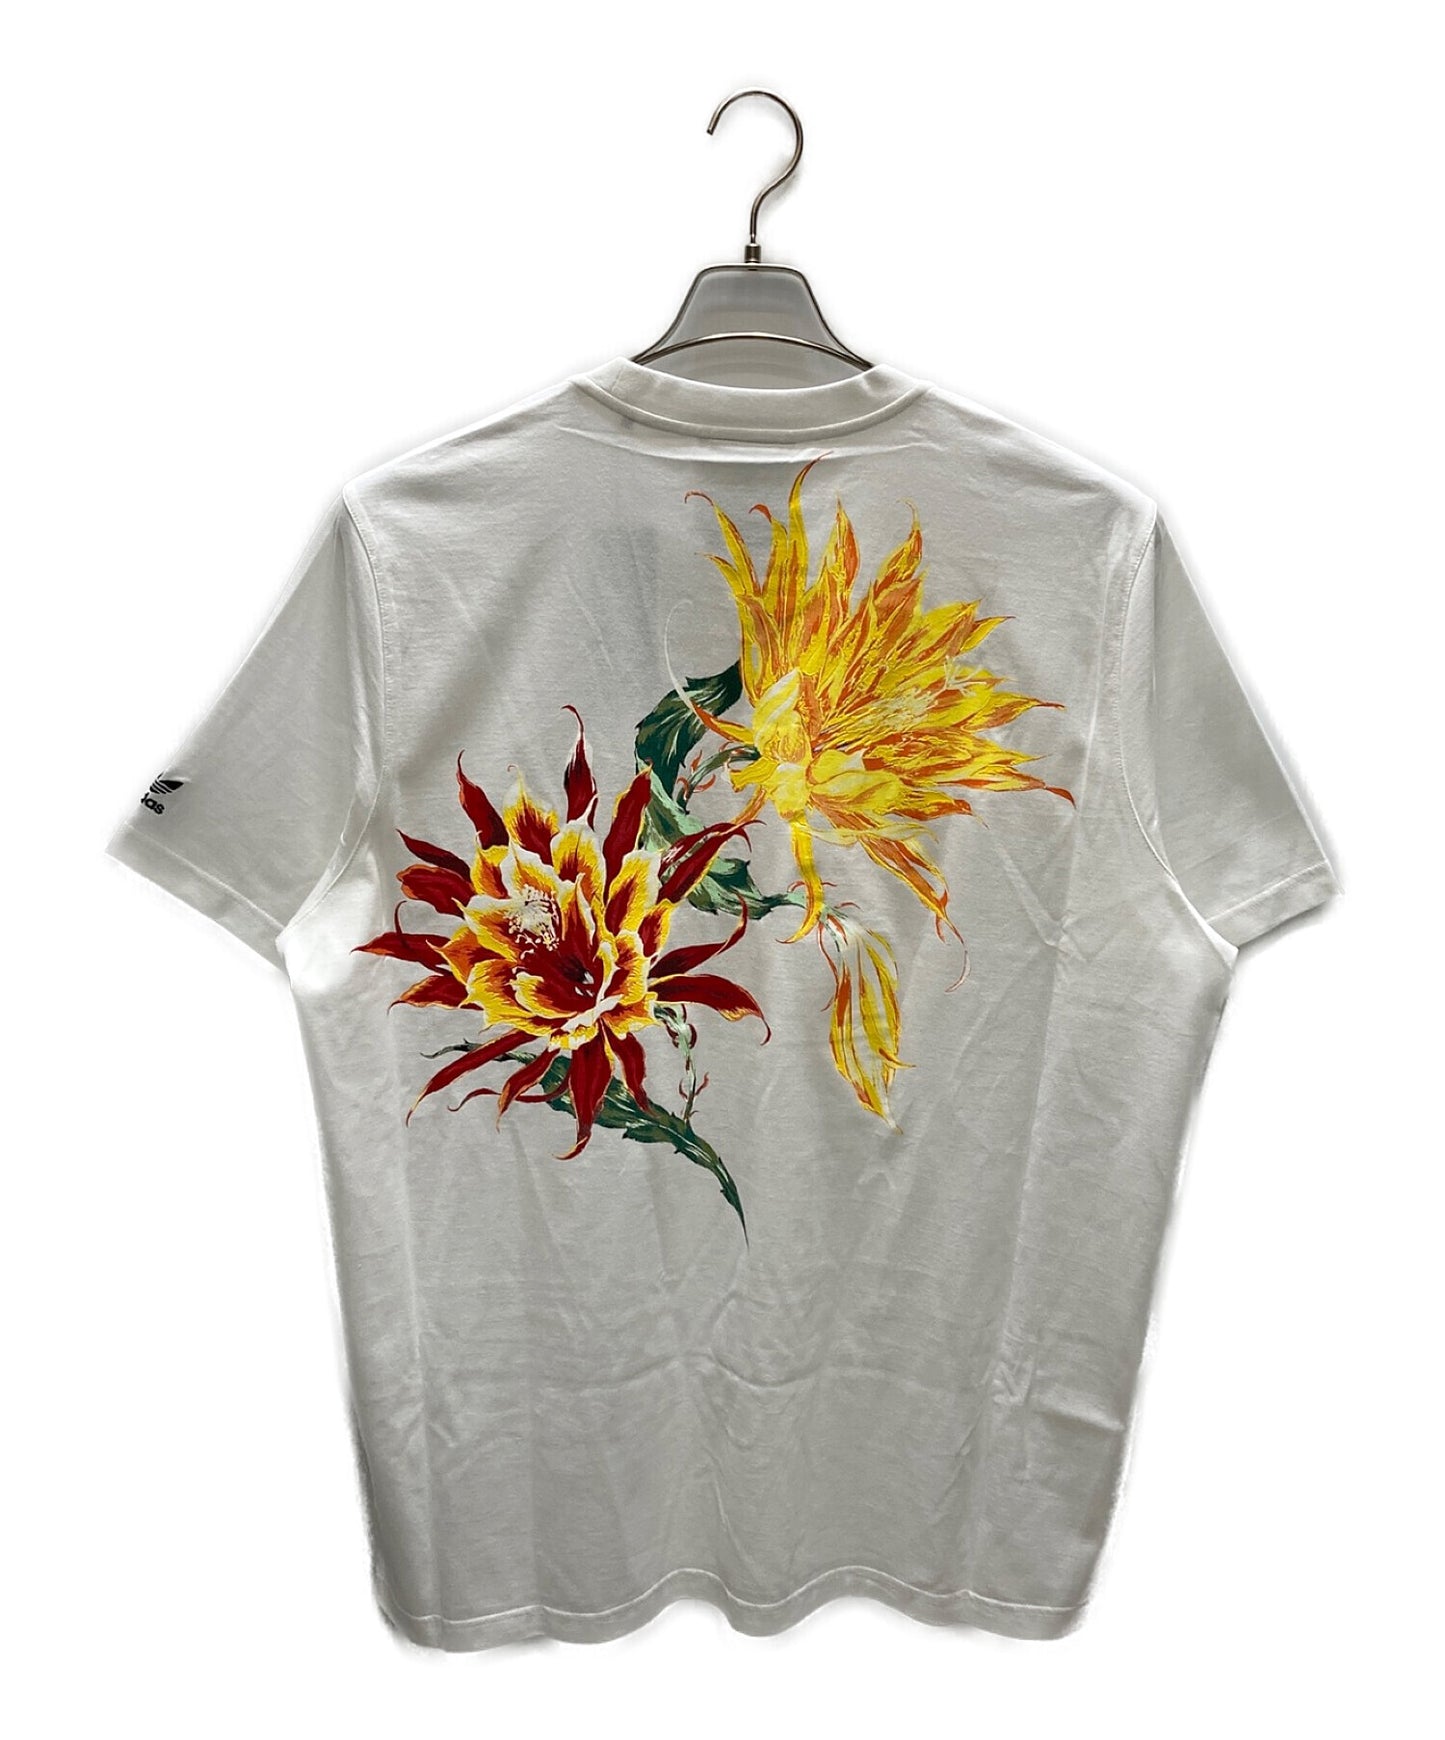 Y의 선인장 꽃 프린트 티셔츠 YH-T51-952-1-03